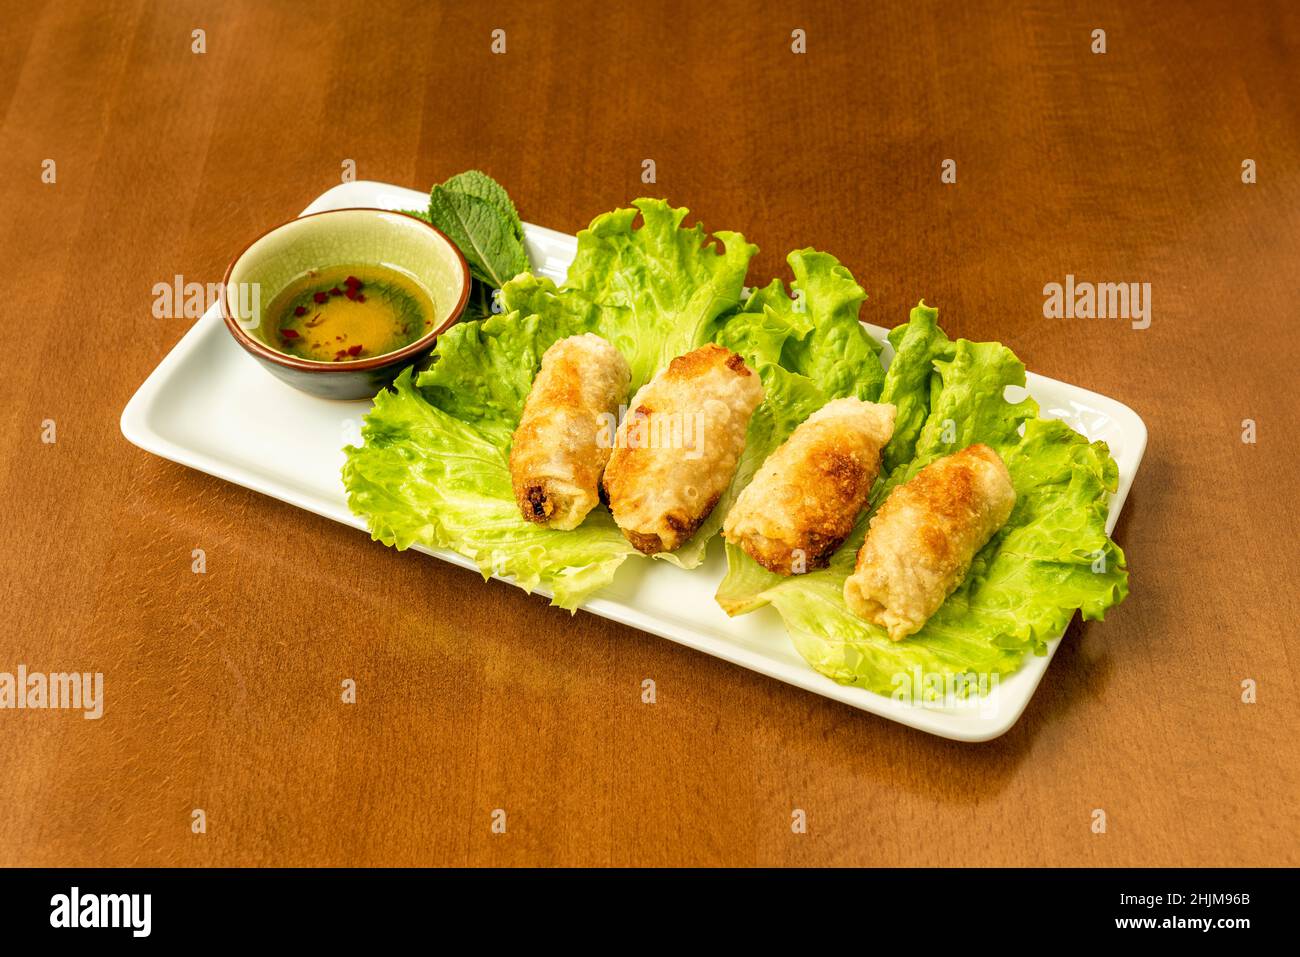 nem rán, est un plat populaire dans la cuisine vietnamienne qui est souvent servi comme un apéritif en Europe et en Amérique du Nord, où il y a un grand d vietnamien Banque D'Images